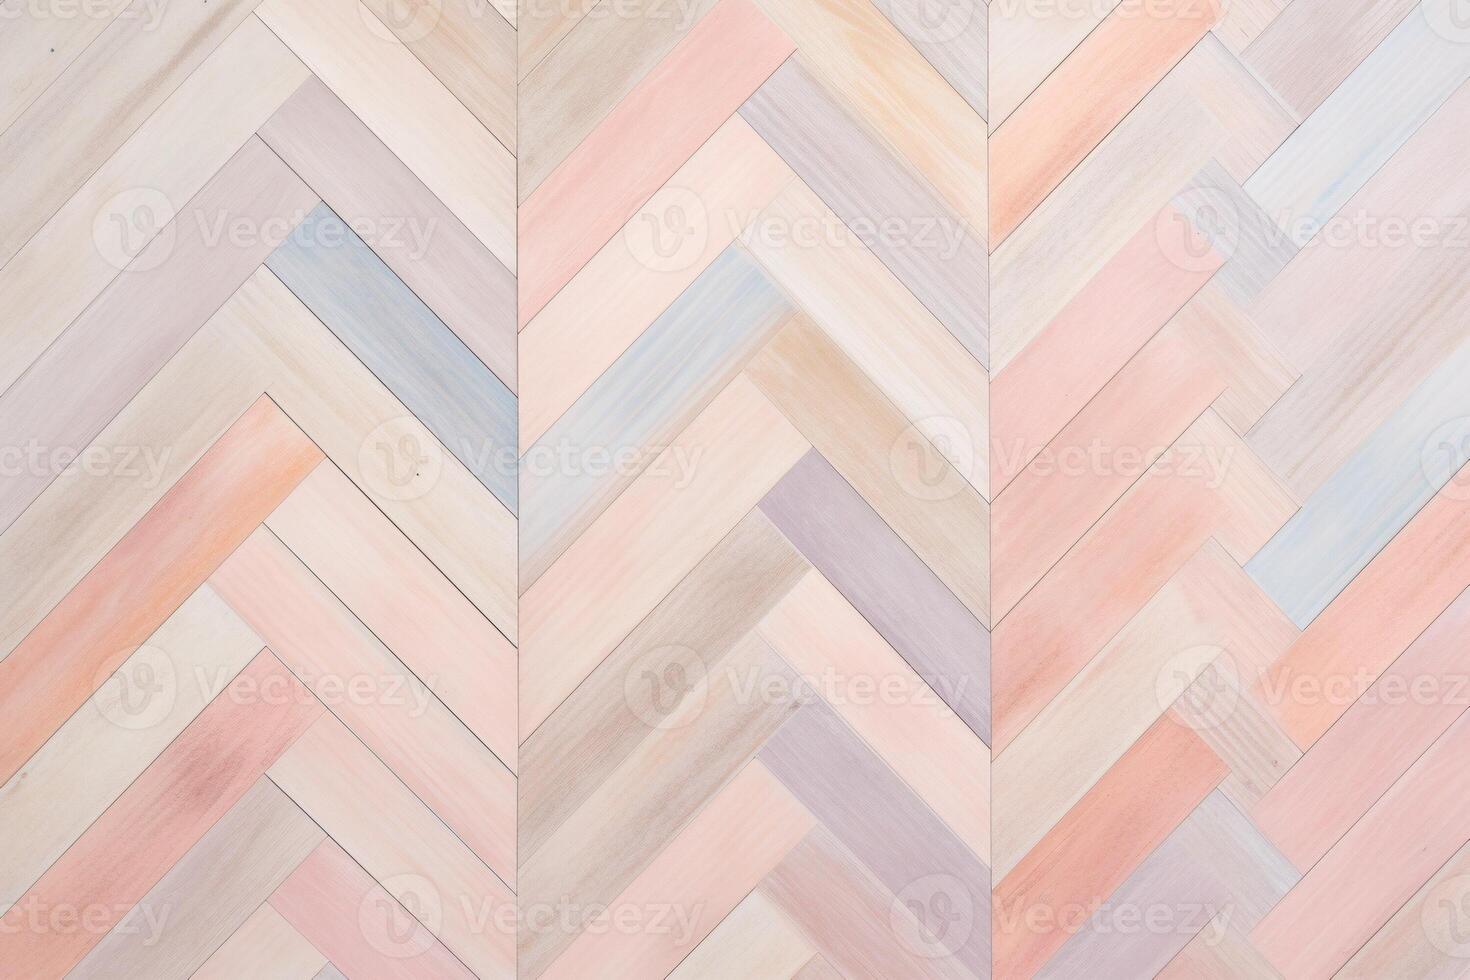 parket hout patroon achtergrond, hout parket textuur, houten parket achtergrond, hout plank visgraat patroon, parket vloer, foto